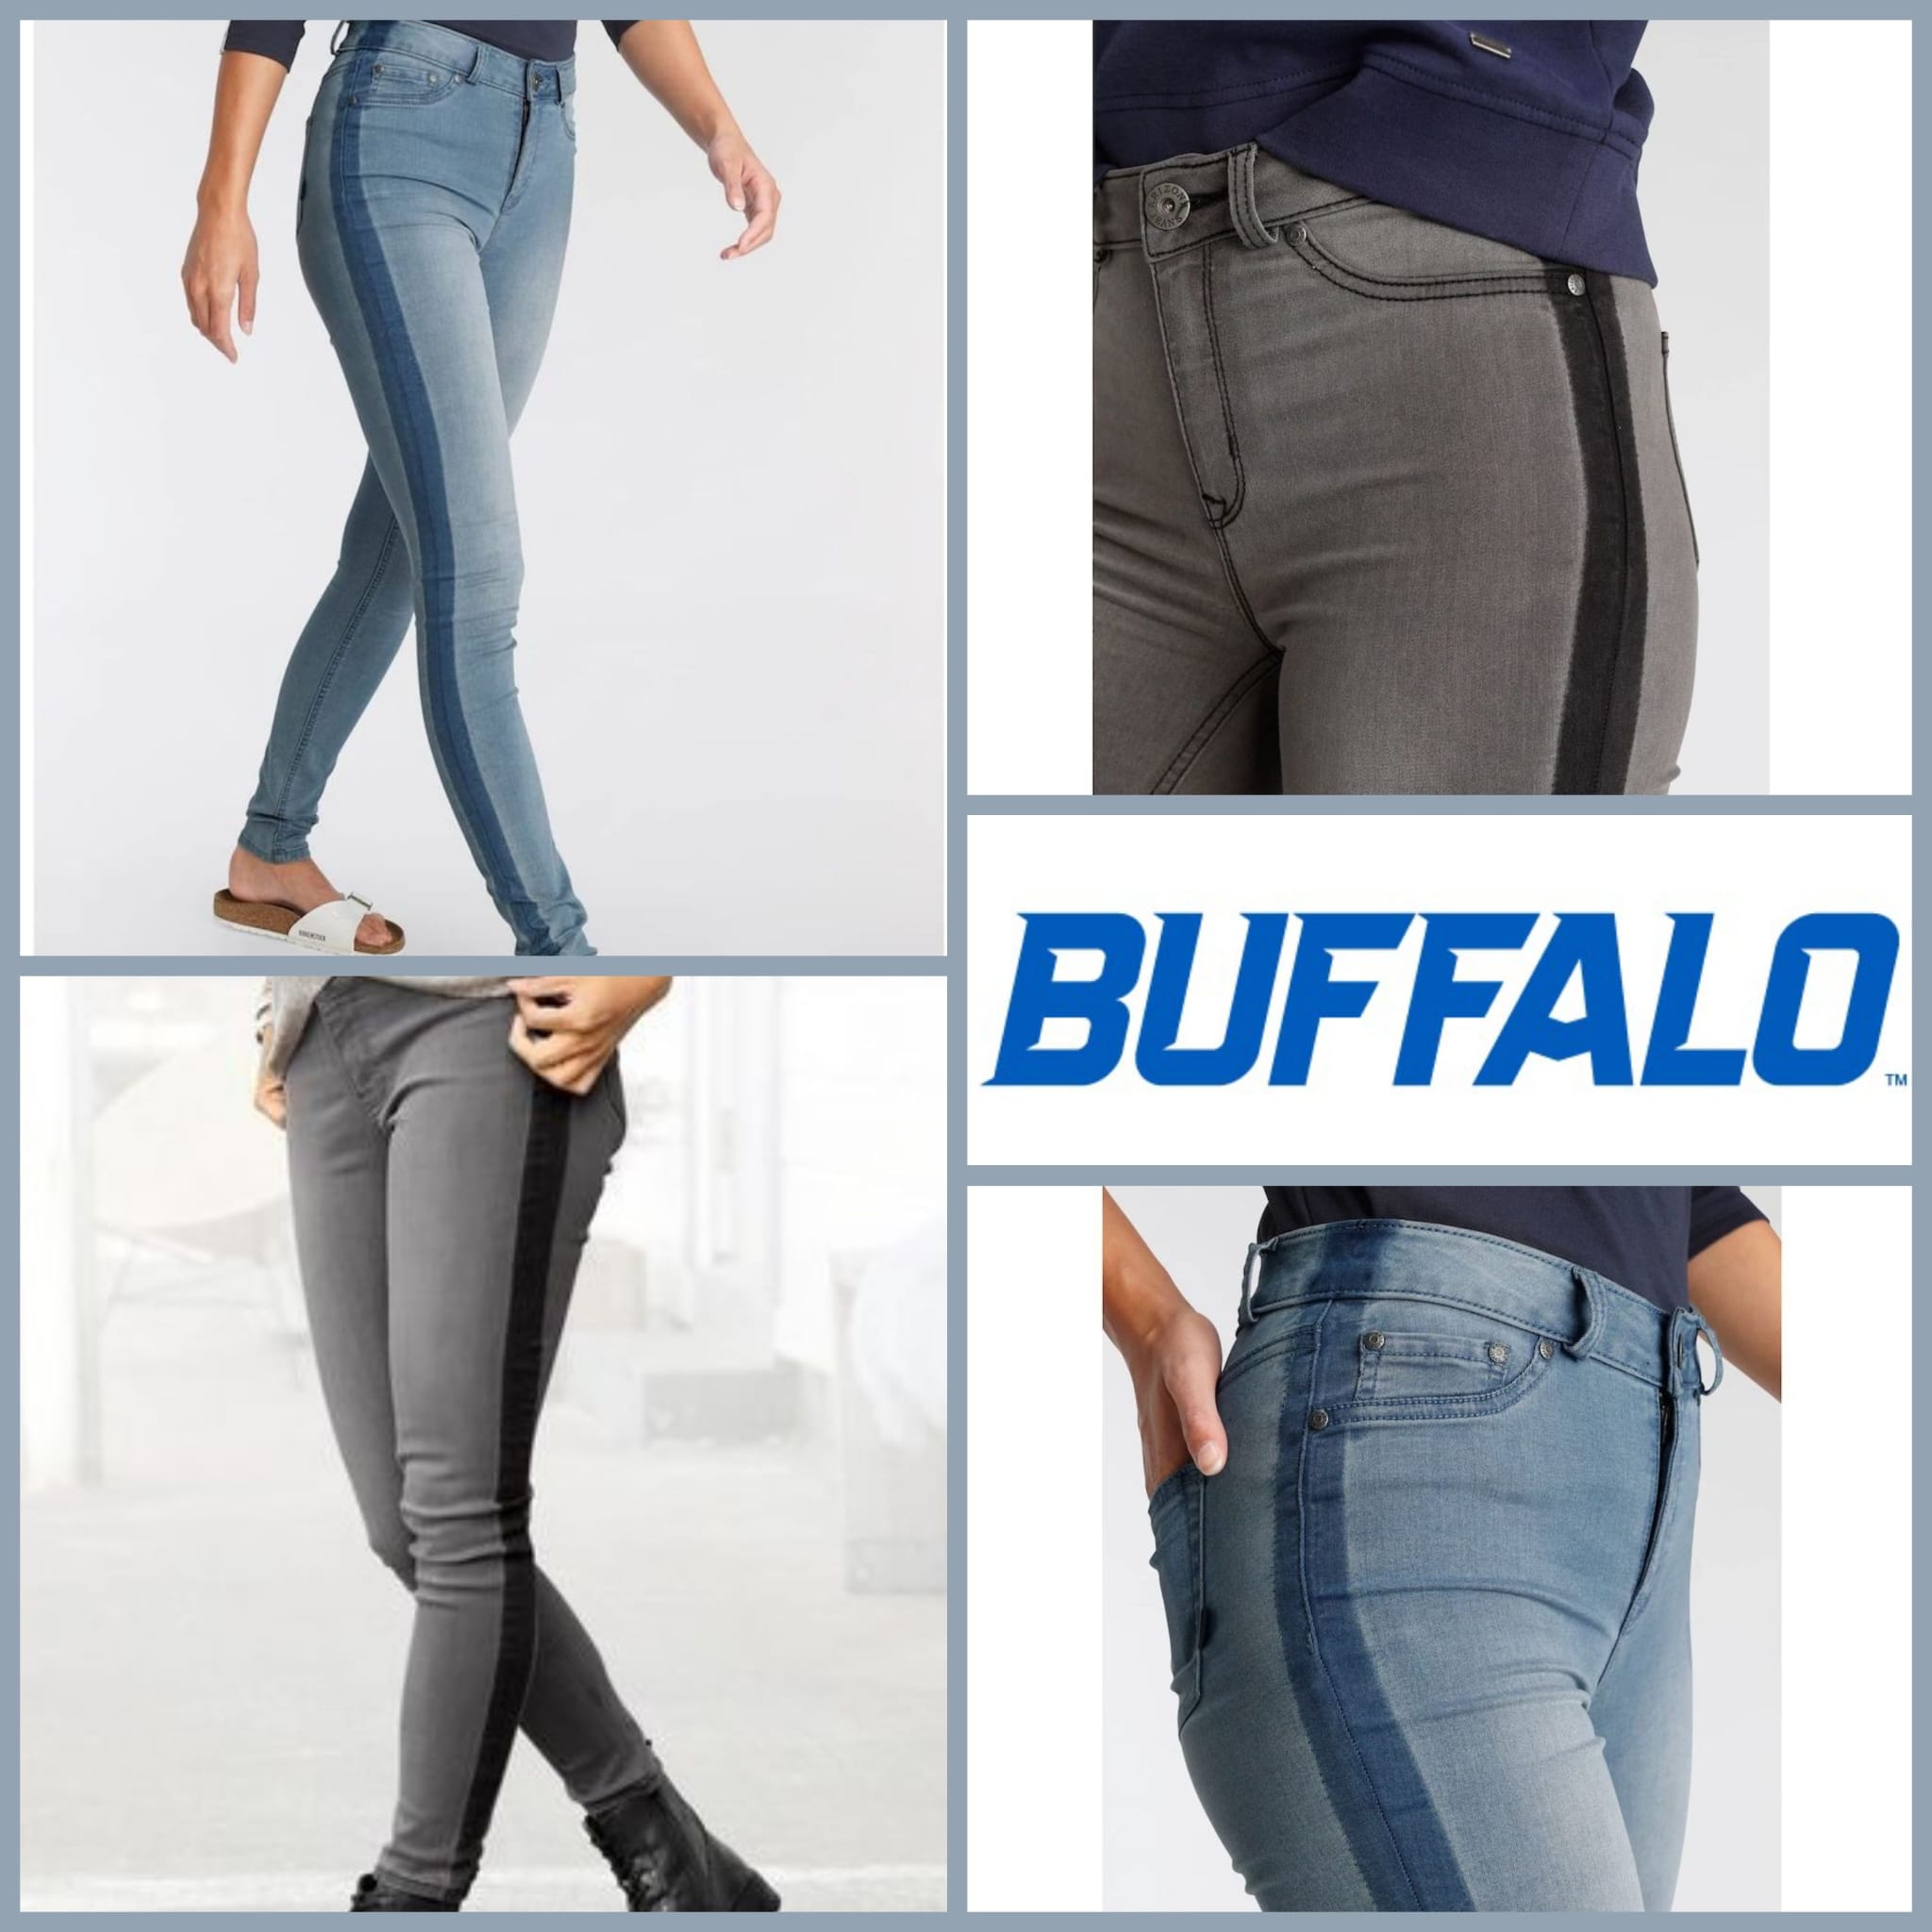 Women's jeans by Buffalo